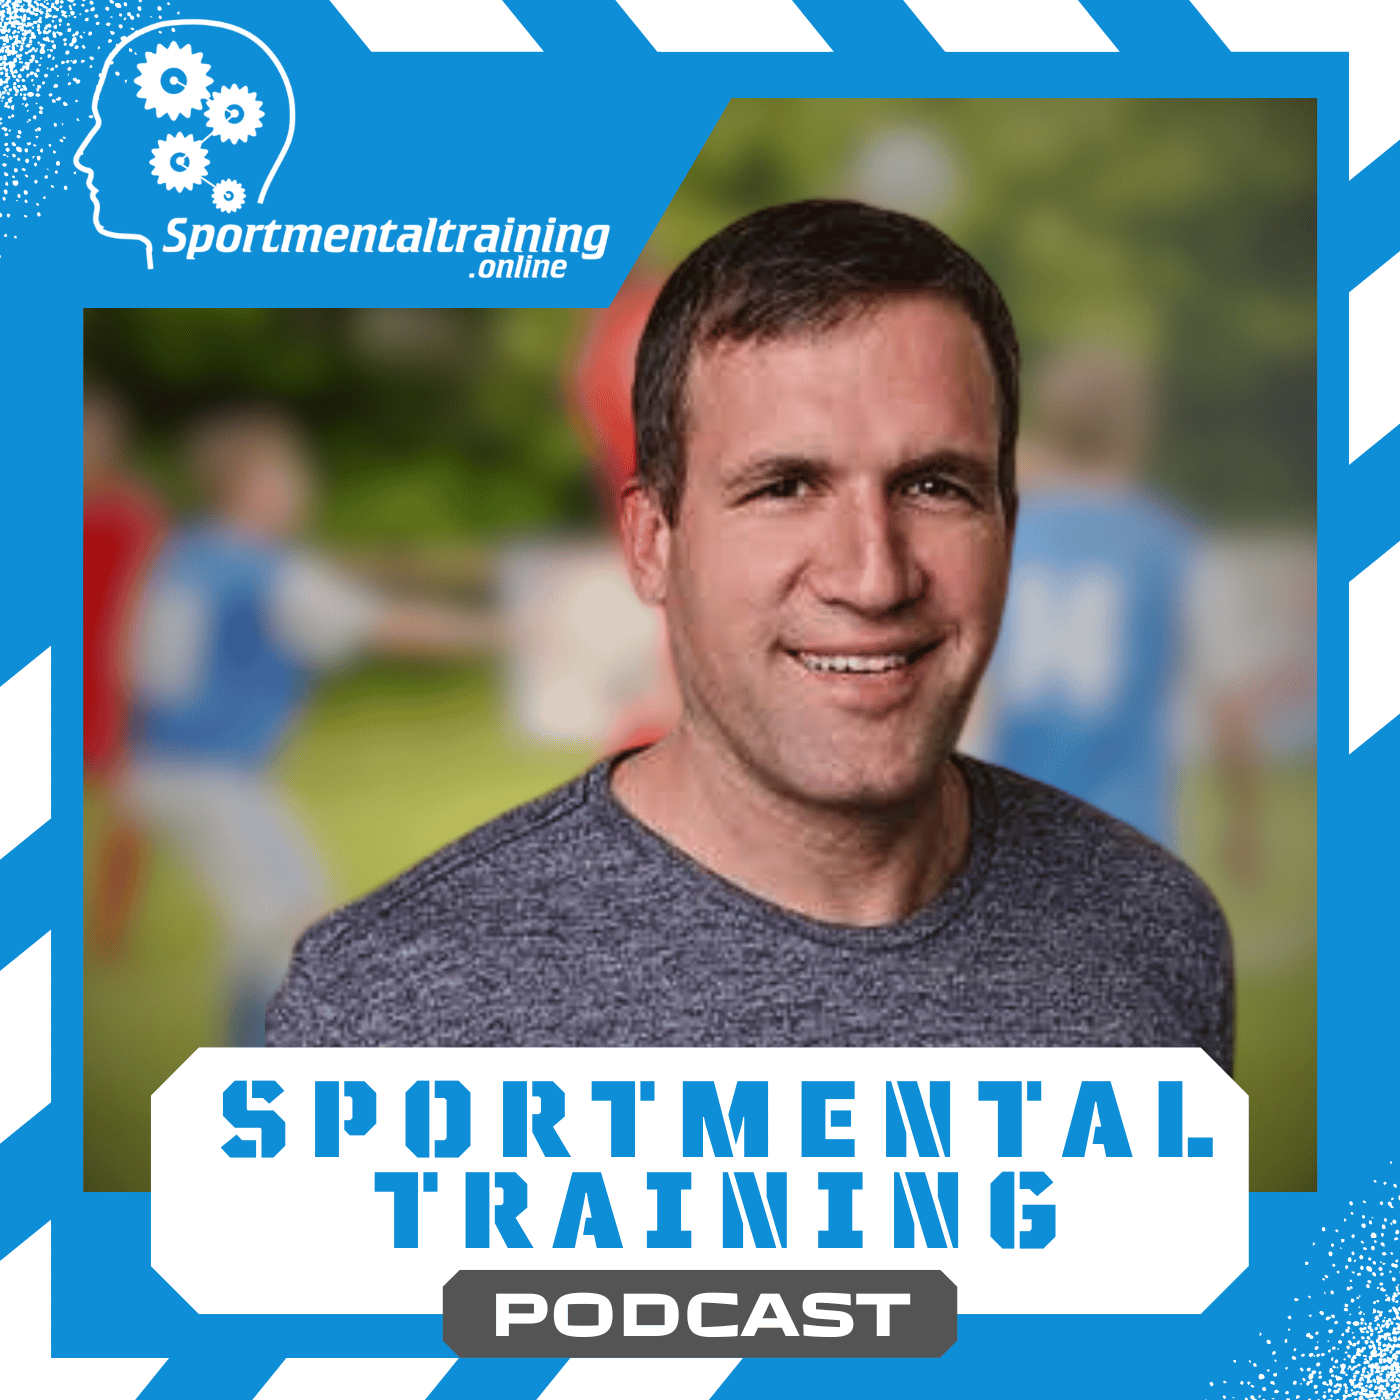 Der Sportmentaltraining Podcast